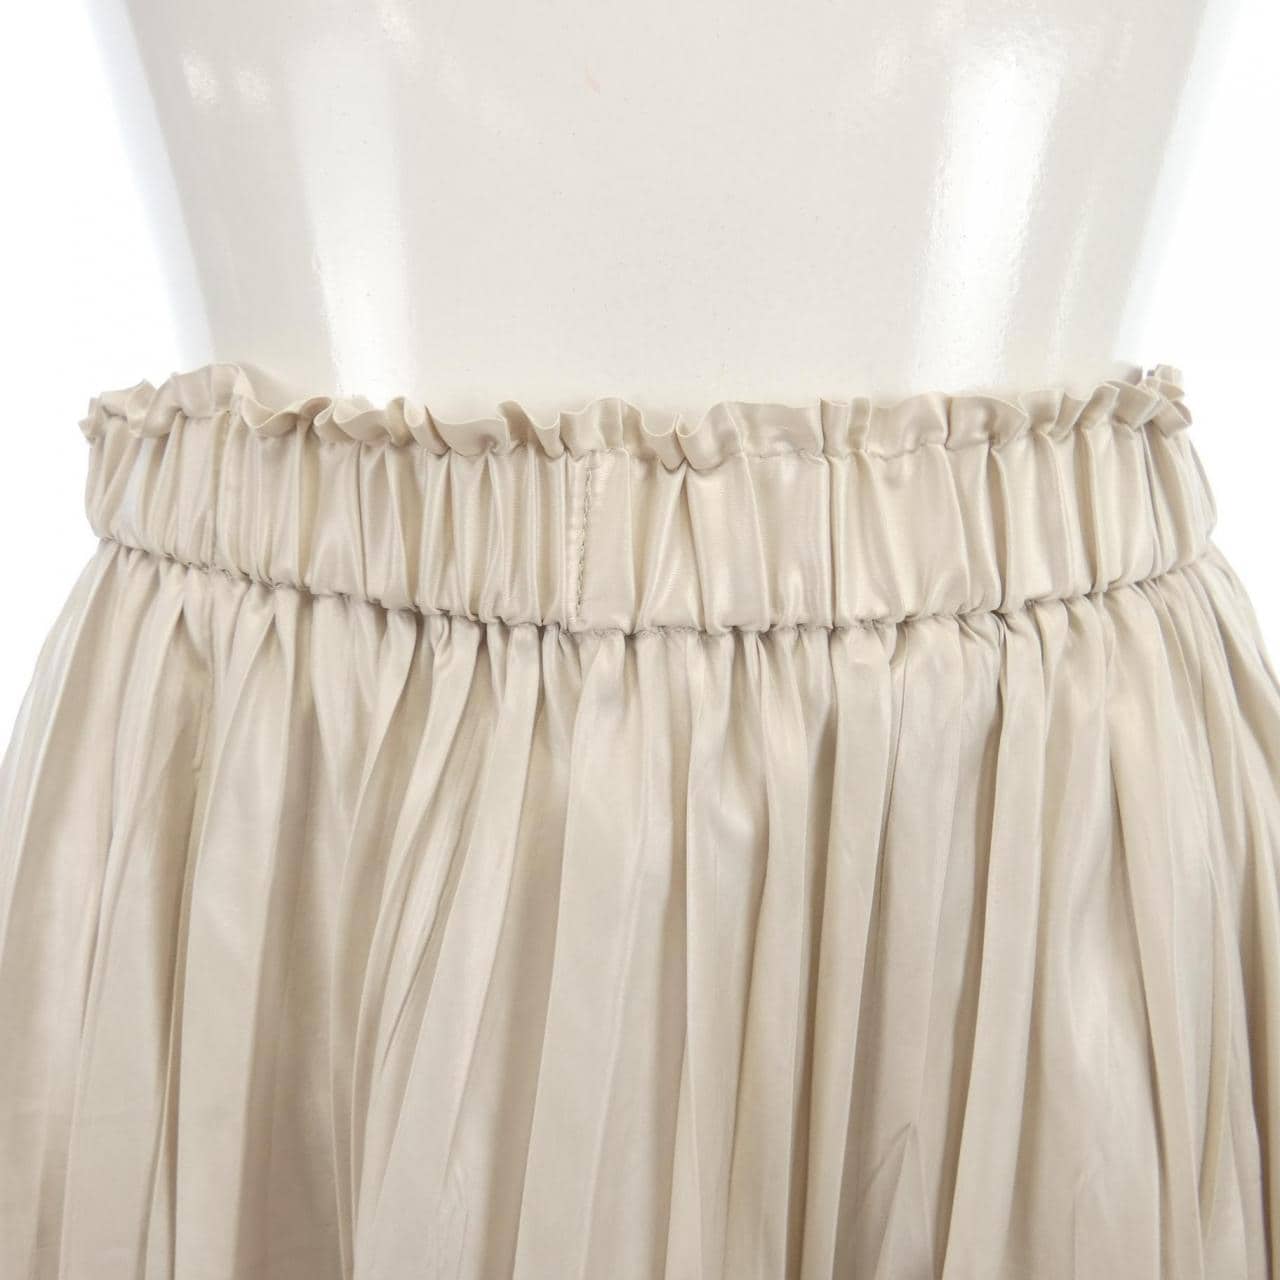 BALLSEY Skirt